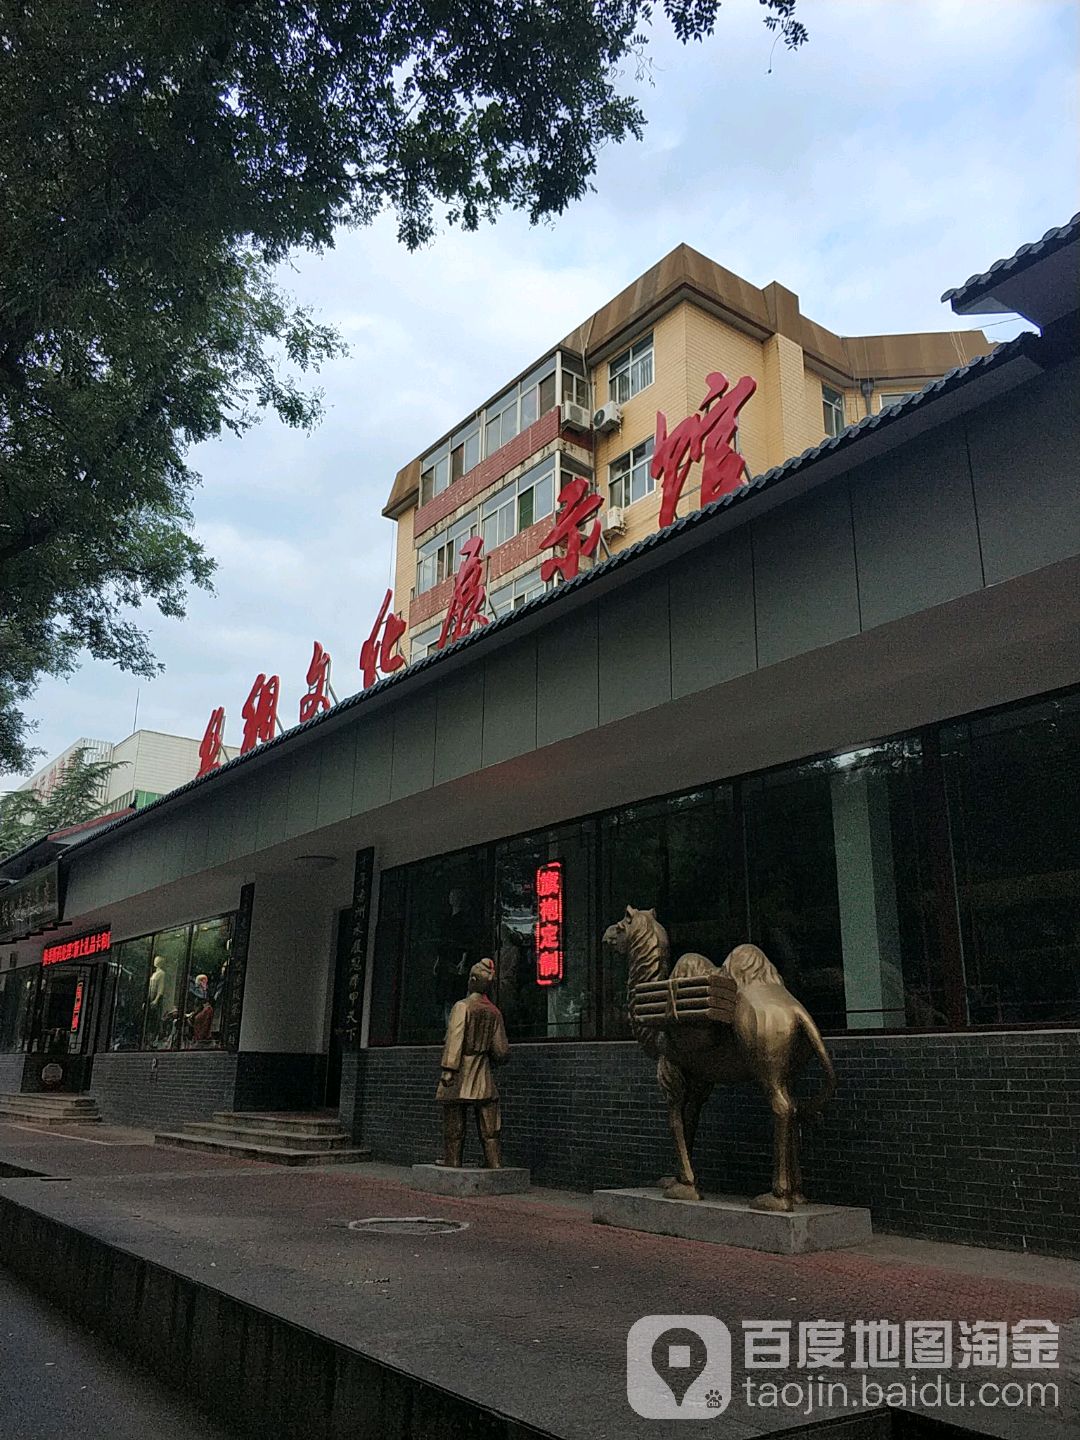 广通集团沿街房丝绸文化展示馆